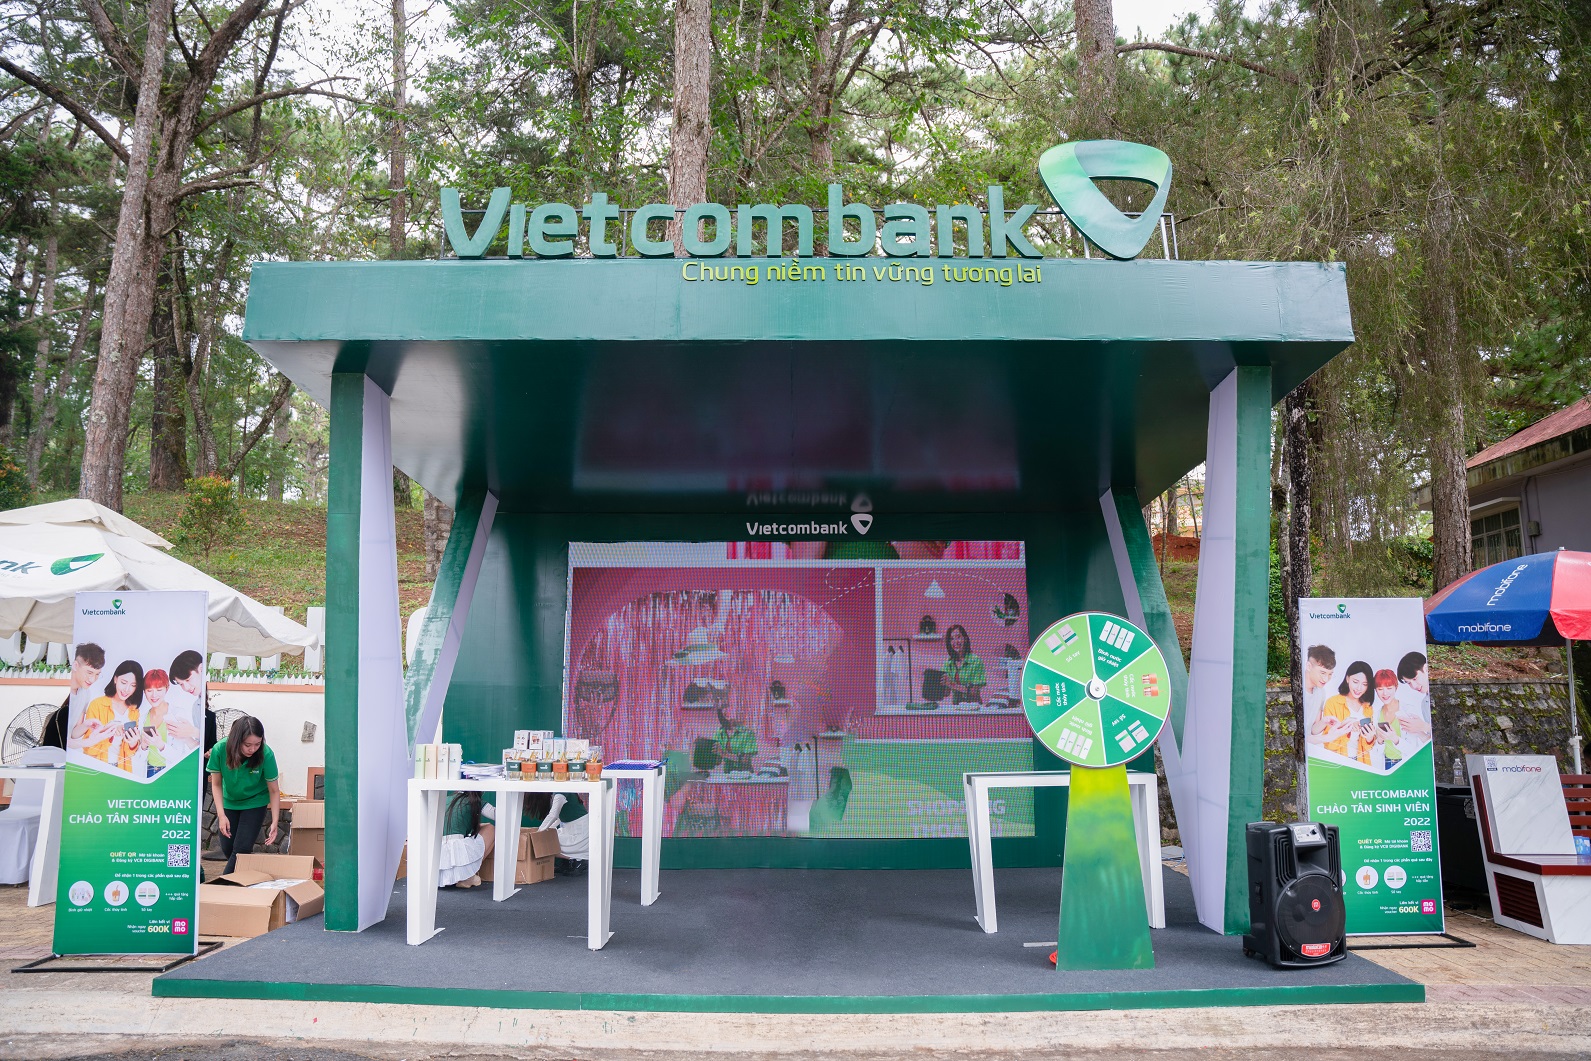 Lãi suất ngân hàng Vietcombank mới nhất tháng 102018